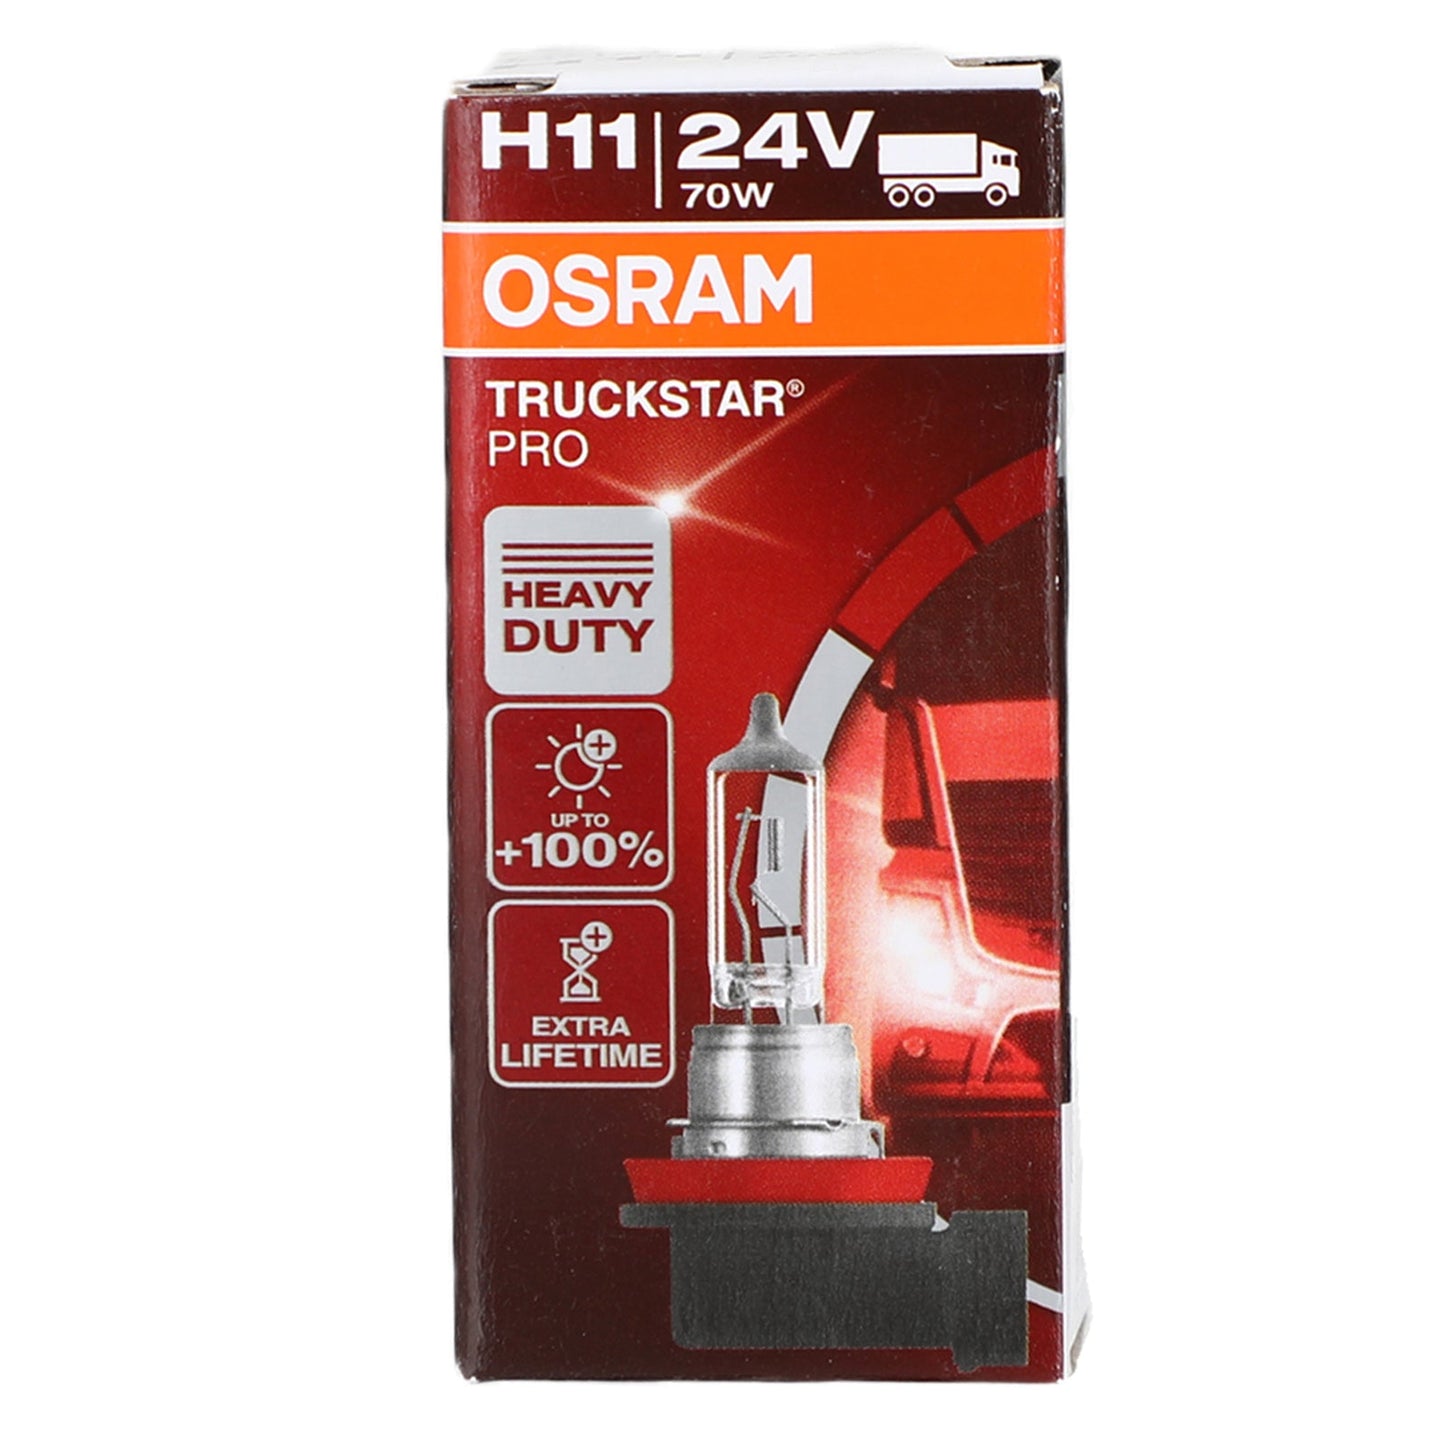 H3 64156TSP-HCB For OSRAM TRUCKSTAR PRO Headlight PK22s 24V70W +100%